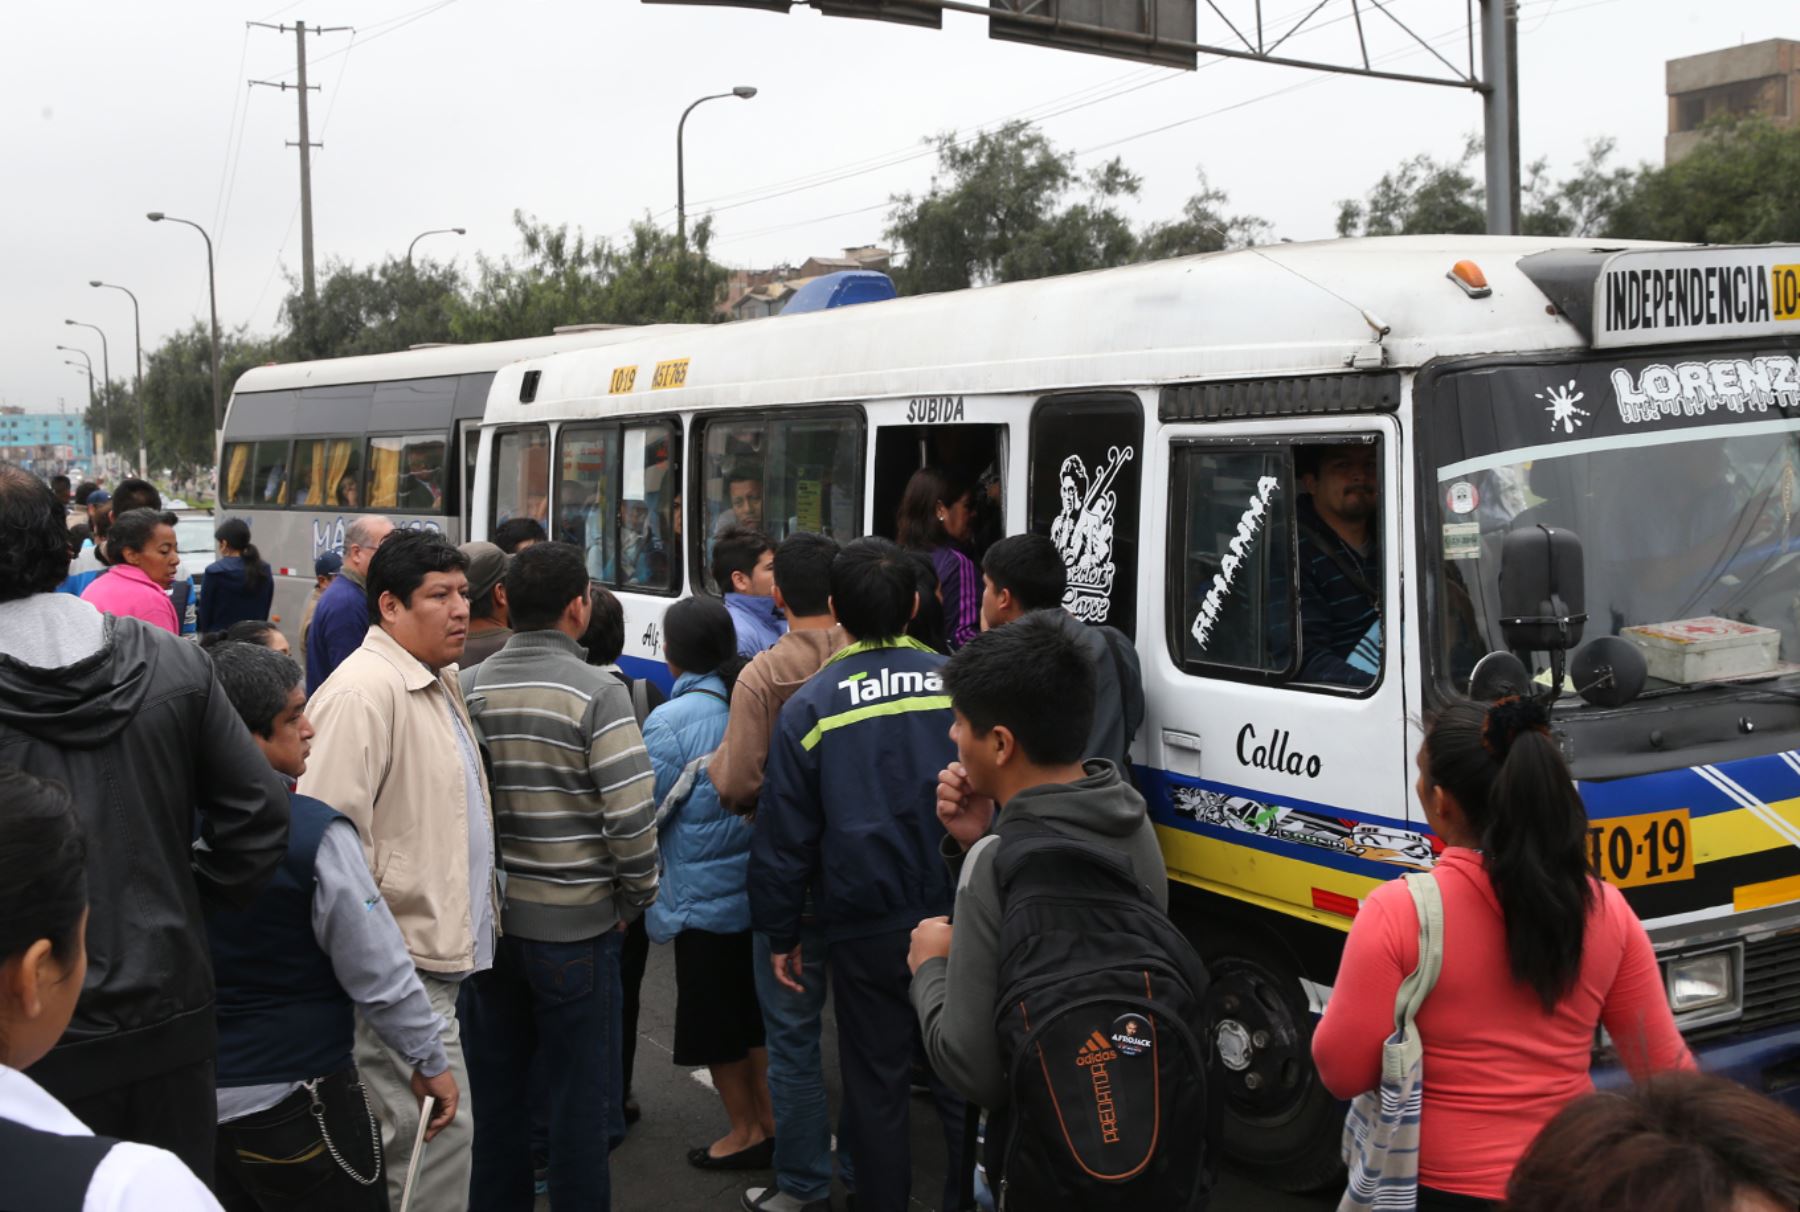 Cerca de 160 empresas de transporte del Callao acatan hoy un paro que está afectando a miles de usuarios que se quejan por la falta de unidades y por el excesivo incremento en las tarifas que cobran algunos transportistas.